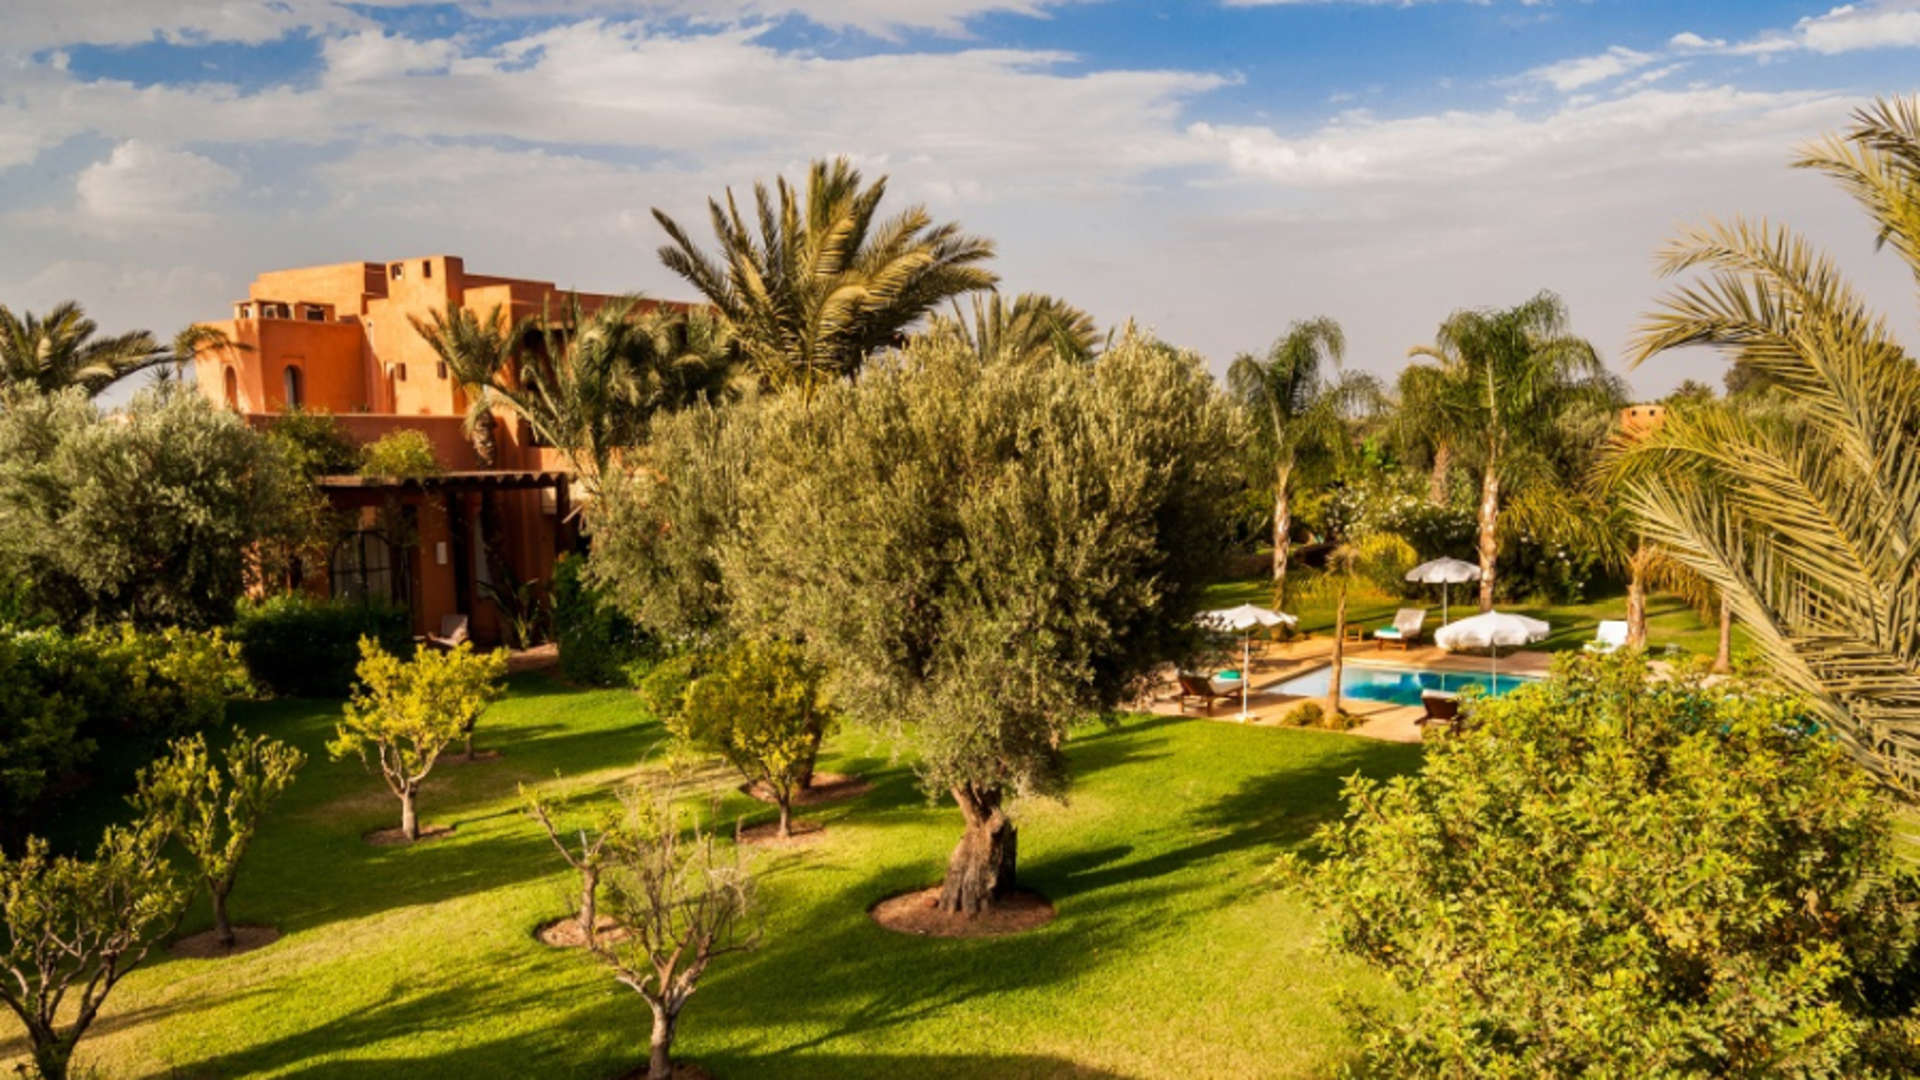 Location de vacances,Villa,Villa de luxe de 4ch à 16ch sur un parc secret de plus d'1 Hectare à Marrakech,Marrakech,Route Amizmiz